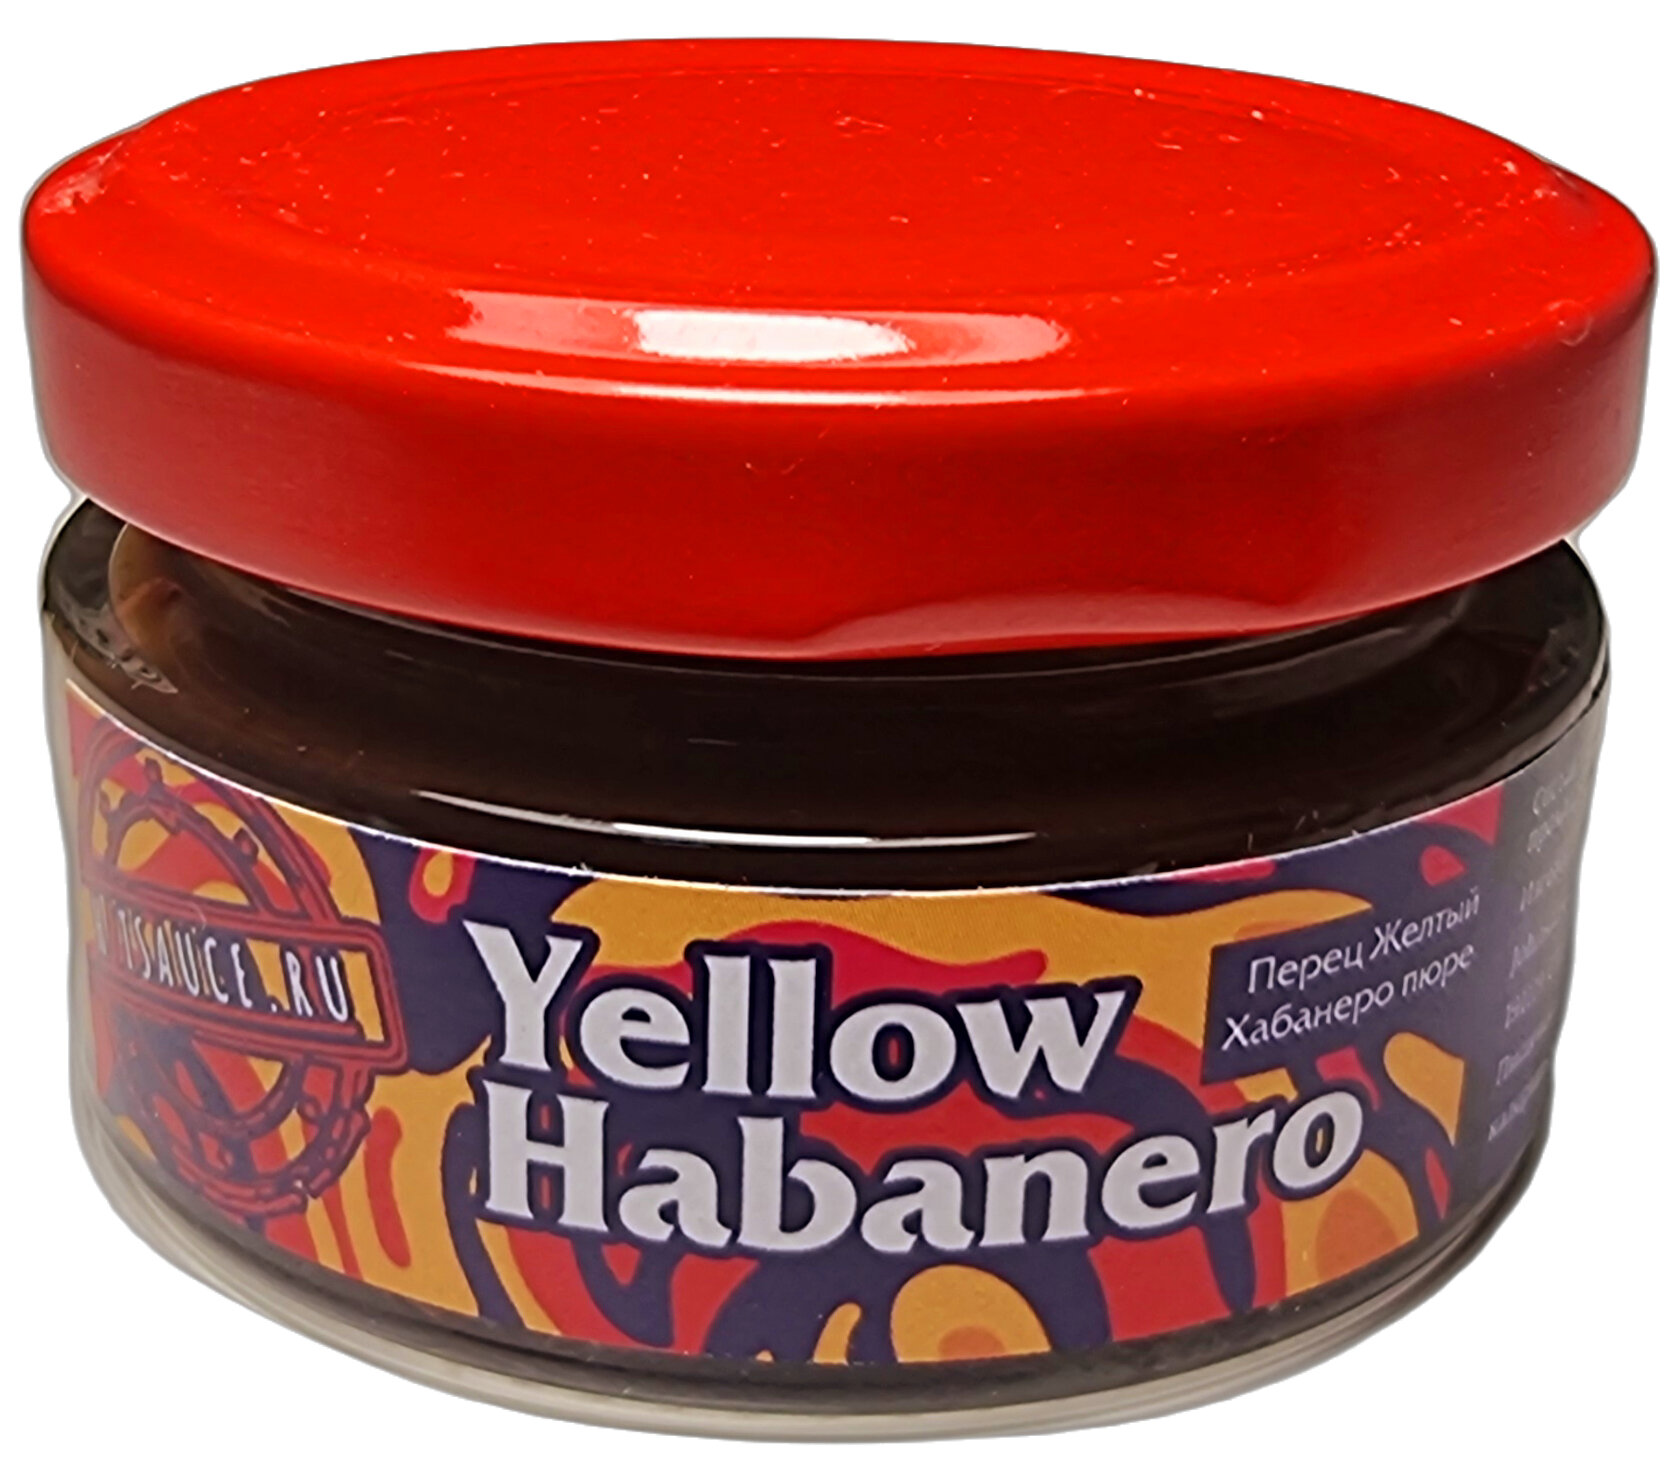 Хабанеро оранжевый пюре, 50гр. / Orange Habanero Puree